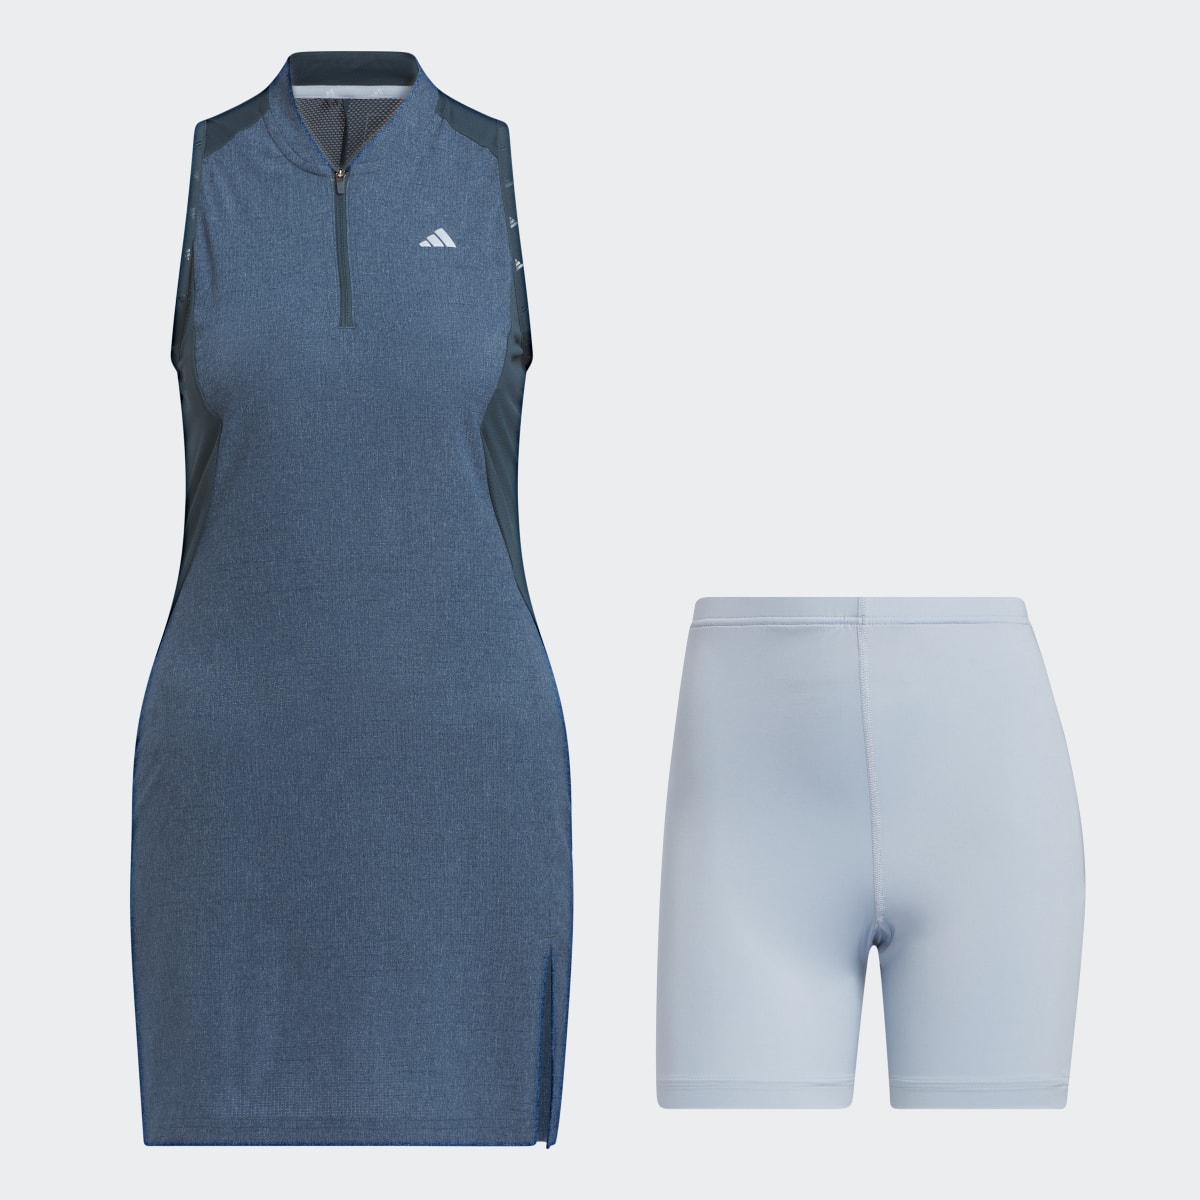 Adidas Vestido sem Mangas para Golfe Tour Ultimate365. 7